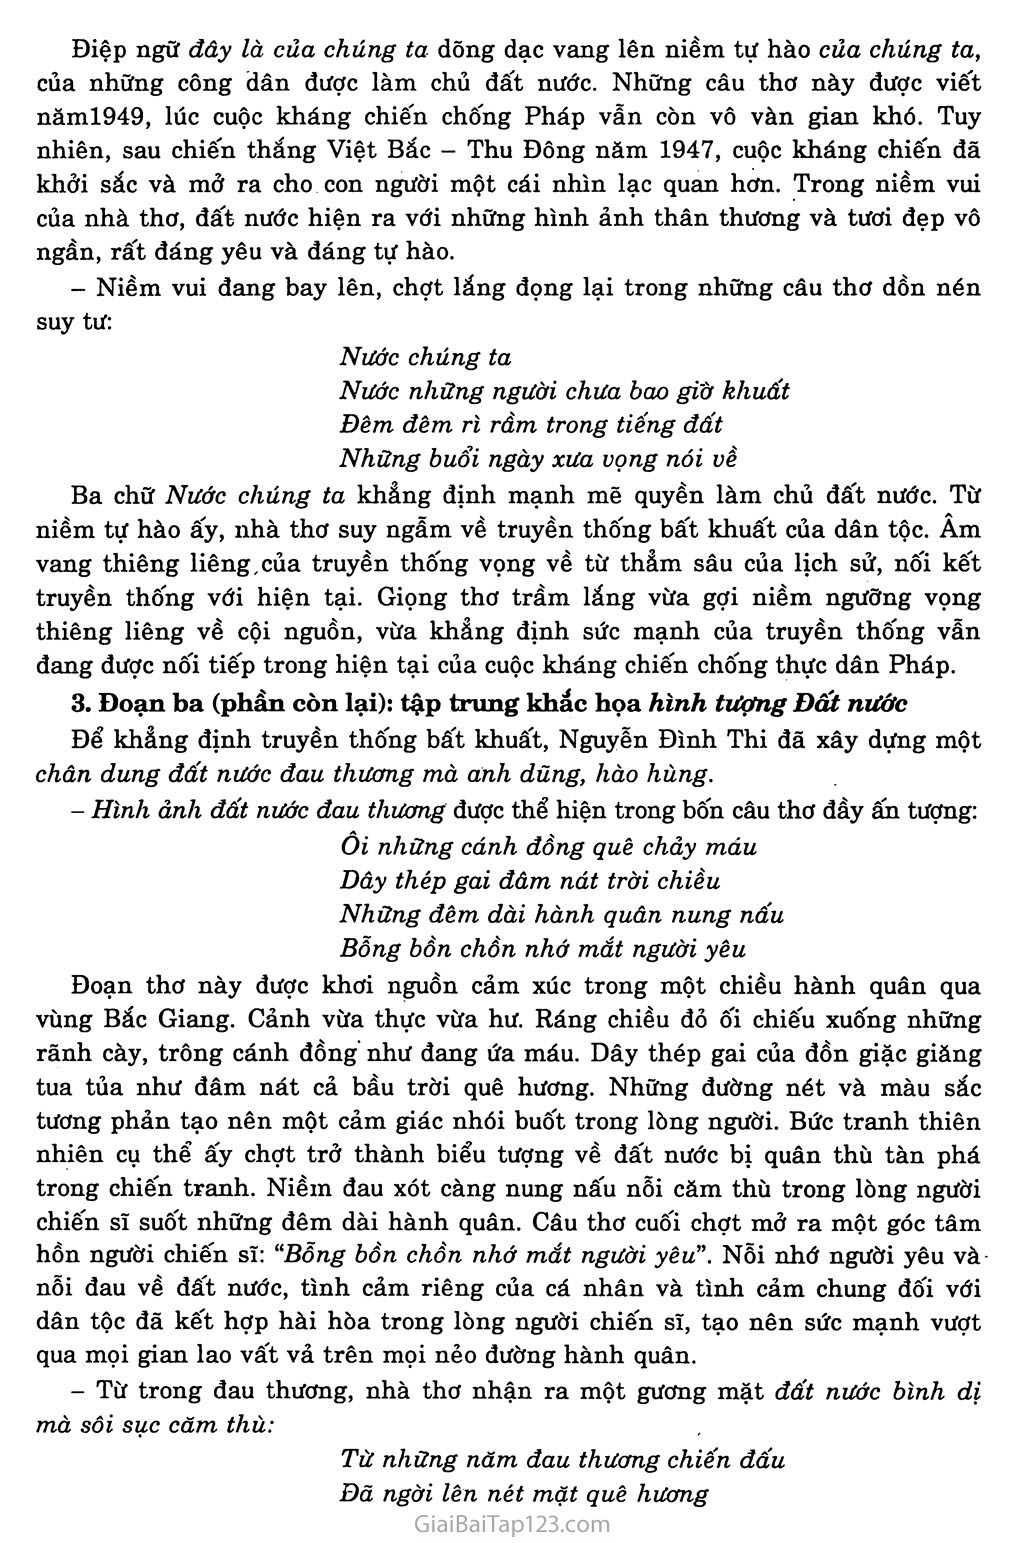 Đất nước (Nguyễn Đình Thi, 1948 - 1955) trang 3